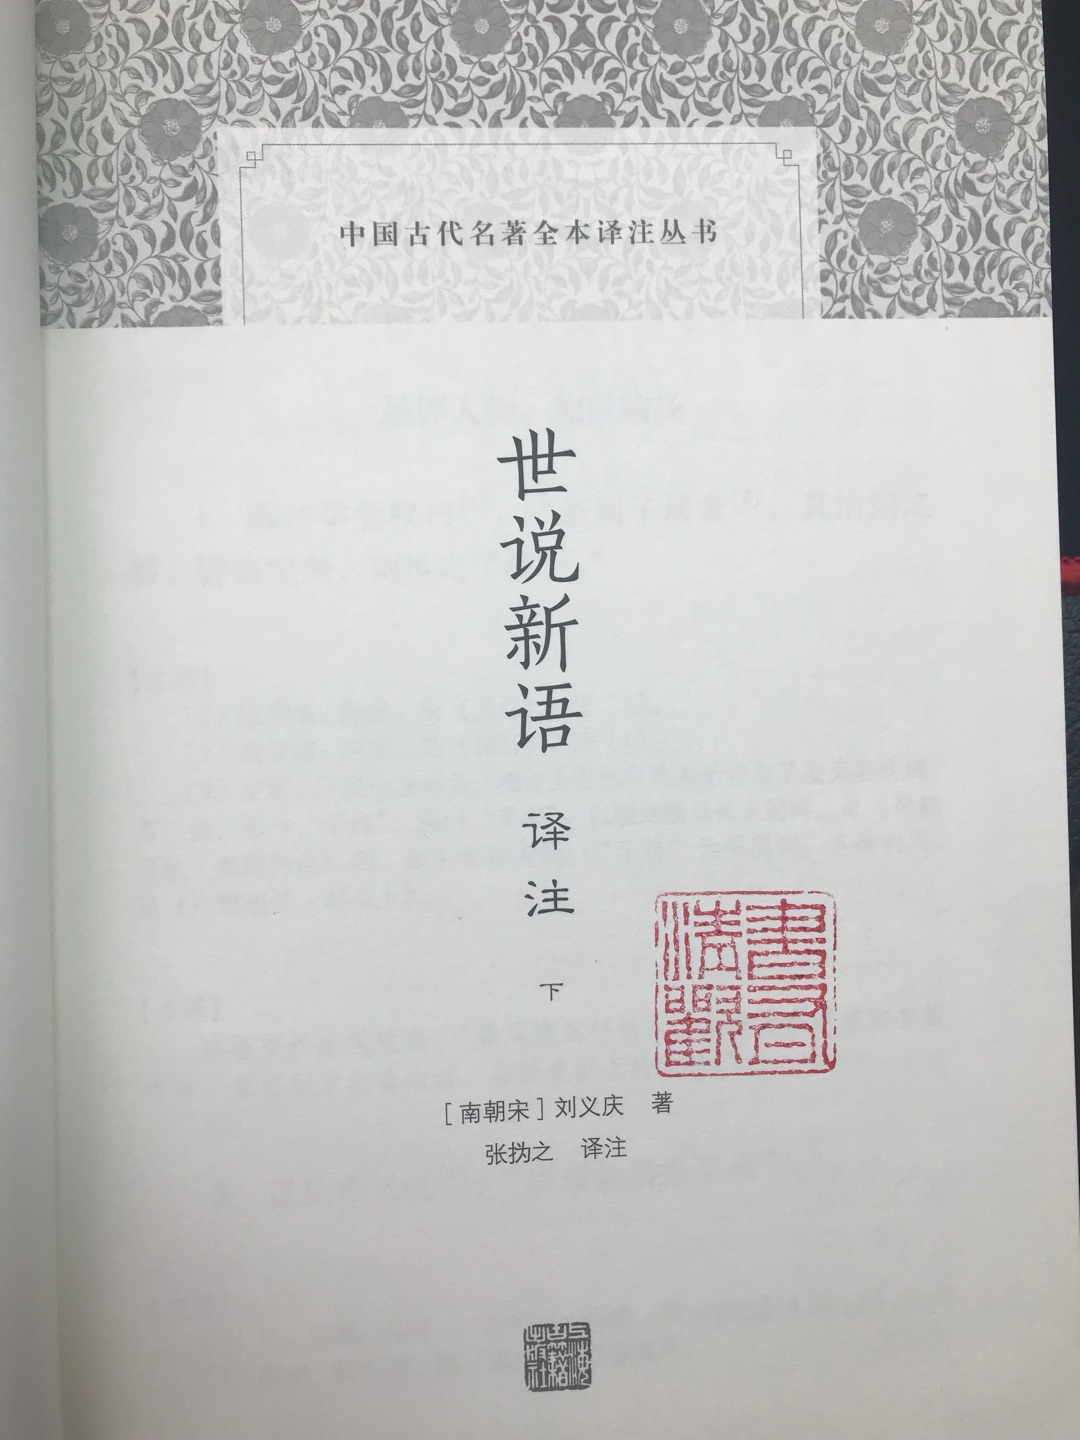 上海古籍出版社，品质绝对有保障！虽然每天活得跟陀螺一样，但看看世说，虽然说得是魏晋人物，现在看来也不过时。